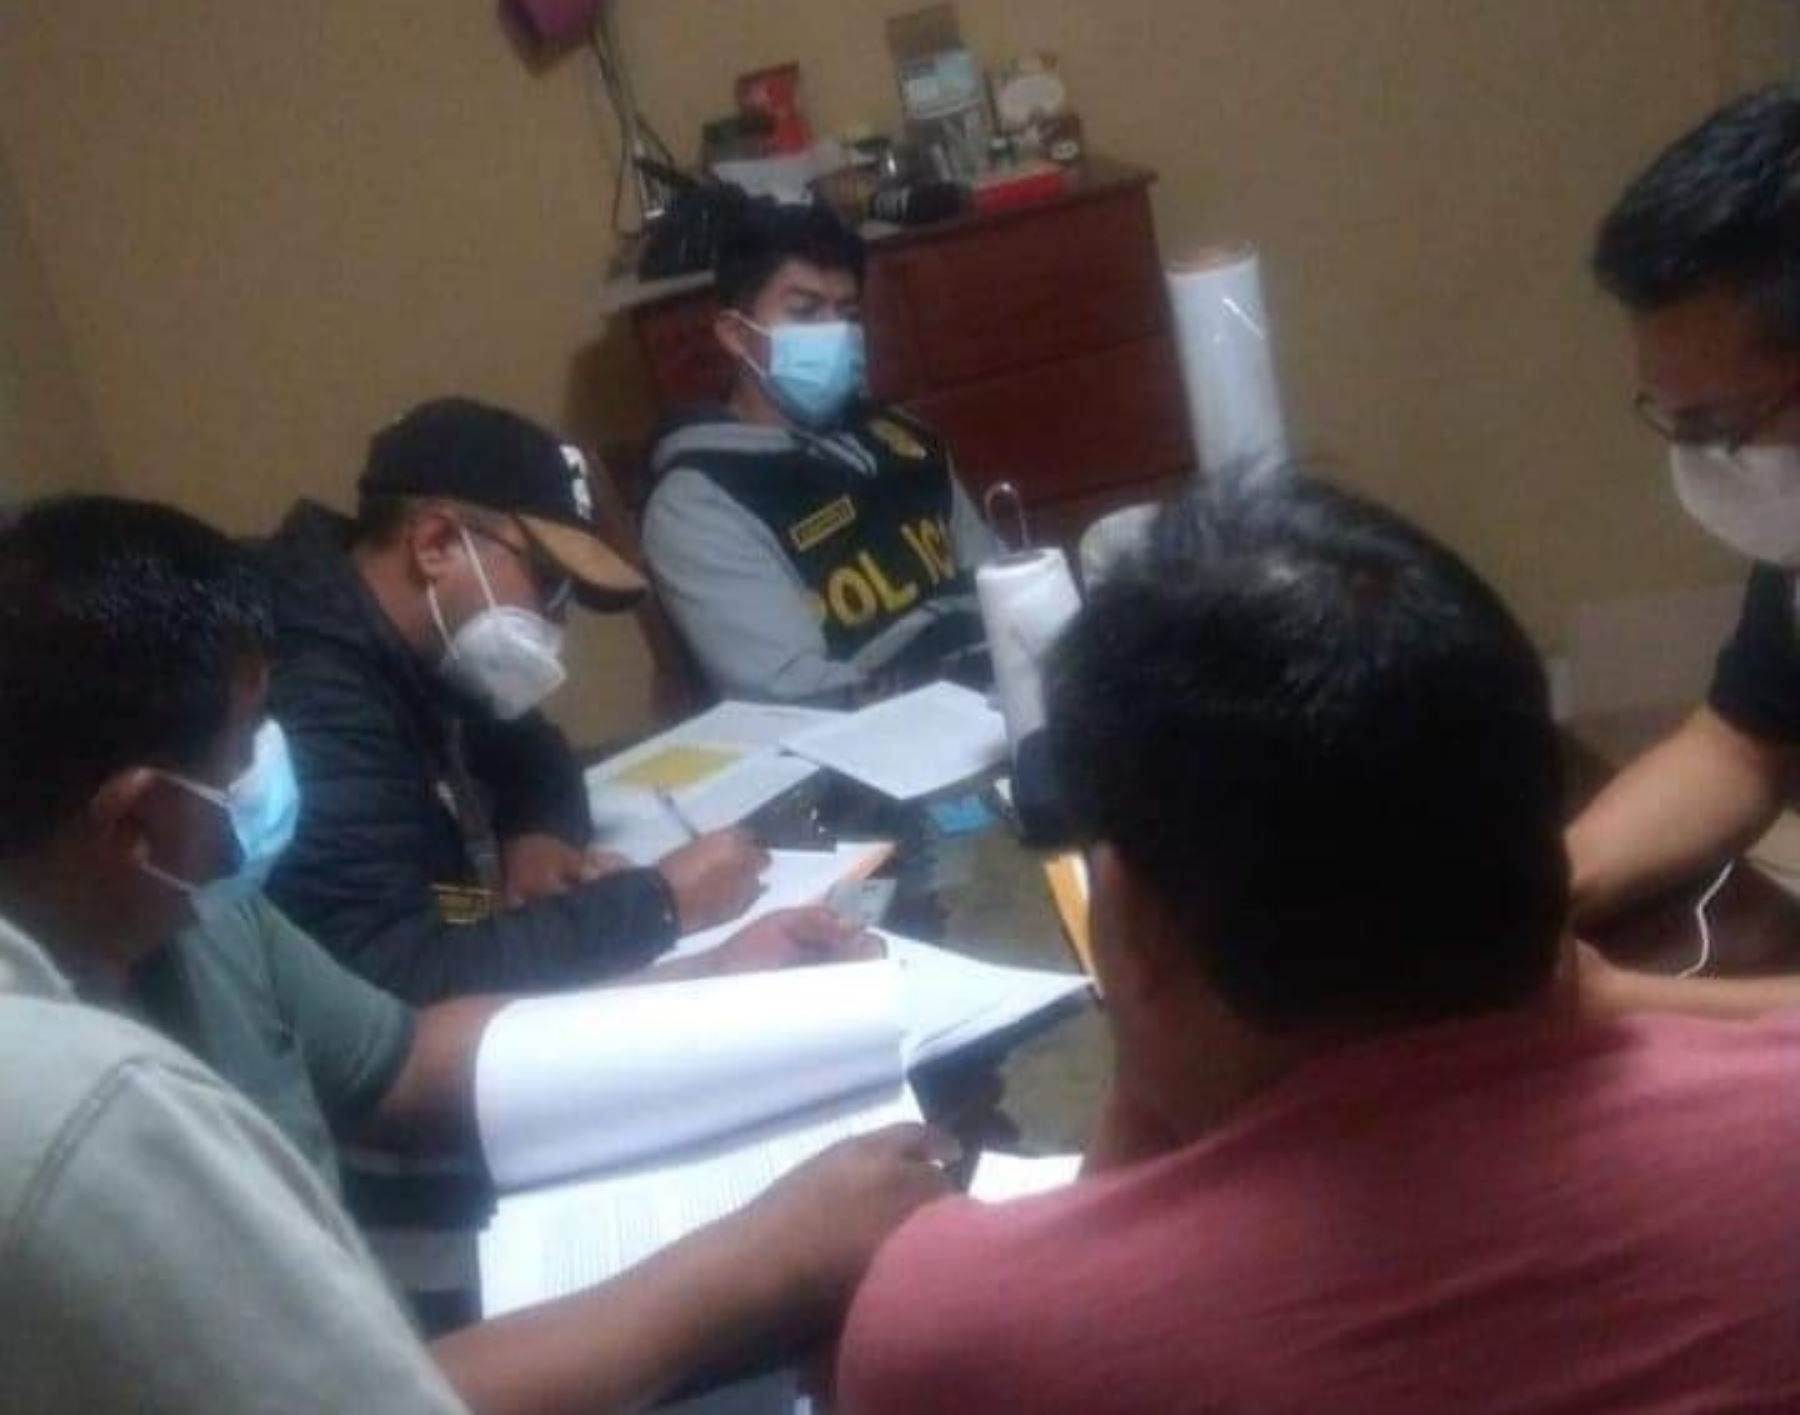 La Fiscalía de Lambayeque detuvo a cuatro exfuncionarios y a un proveedor del municipio de Pítipo, ubicado en la provincia de Ferreñafe, acusados por el delito de peculado doloso por apropiarse de dinero del Estado. ANDINA/Difusión